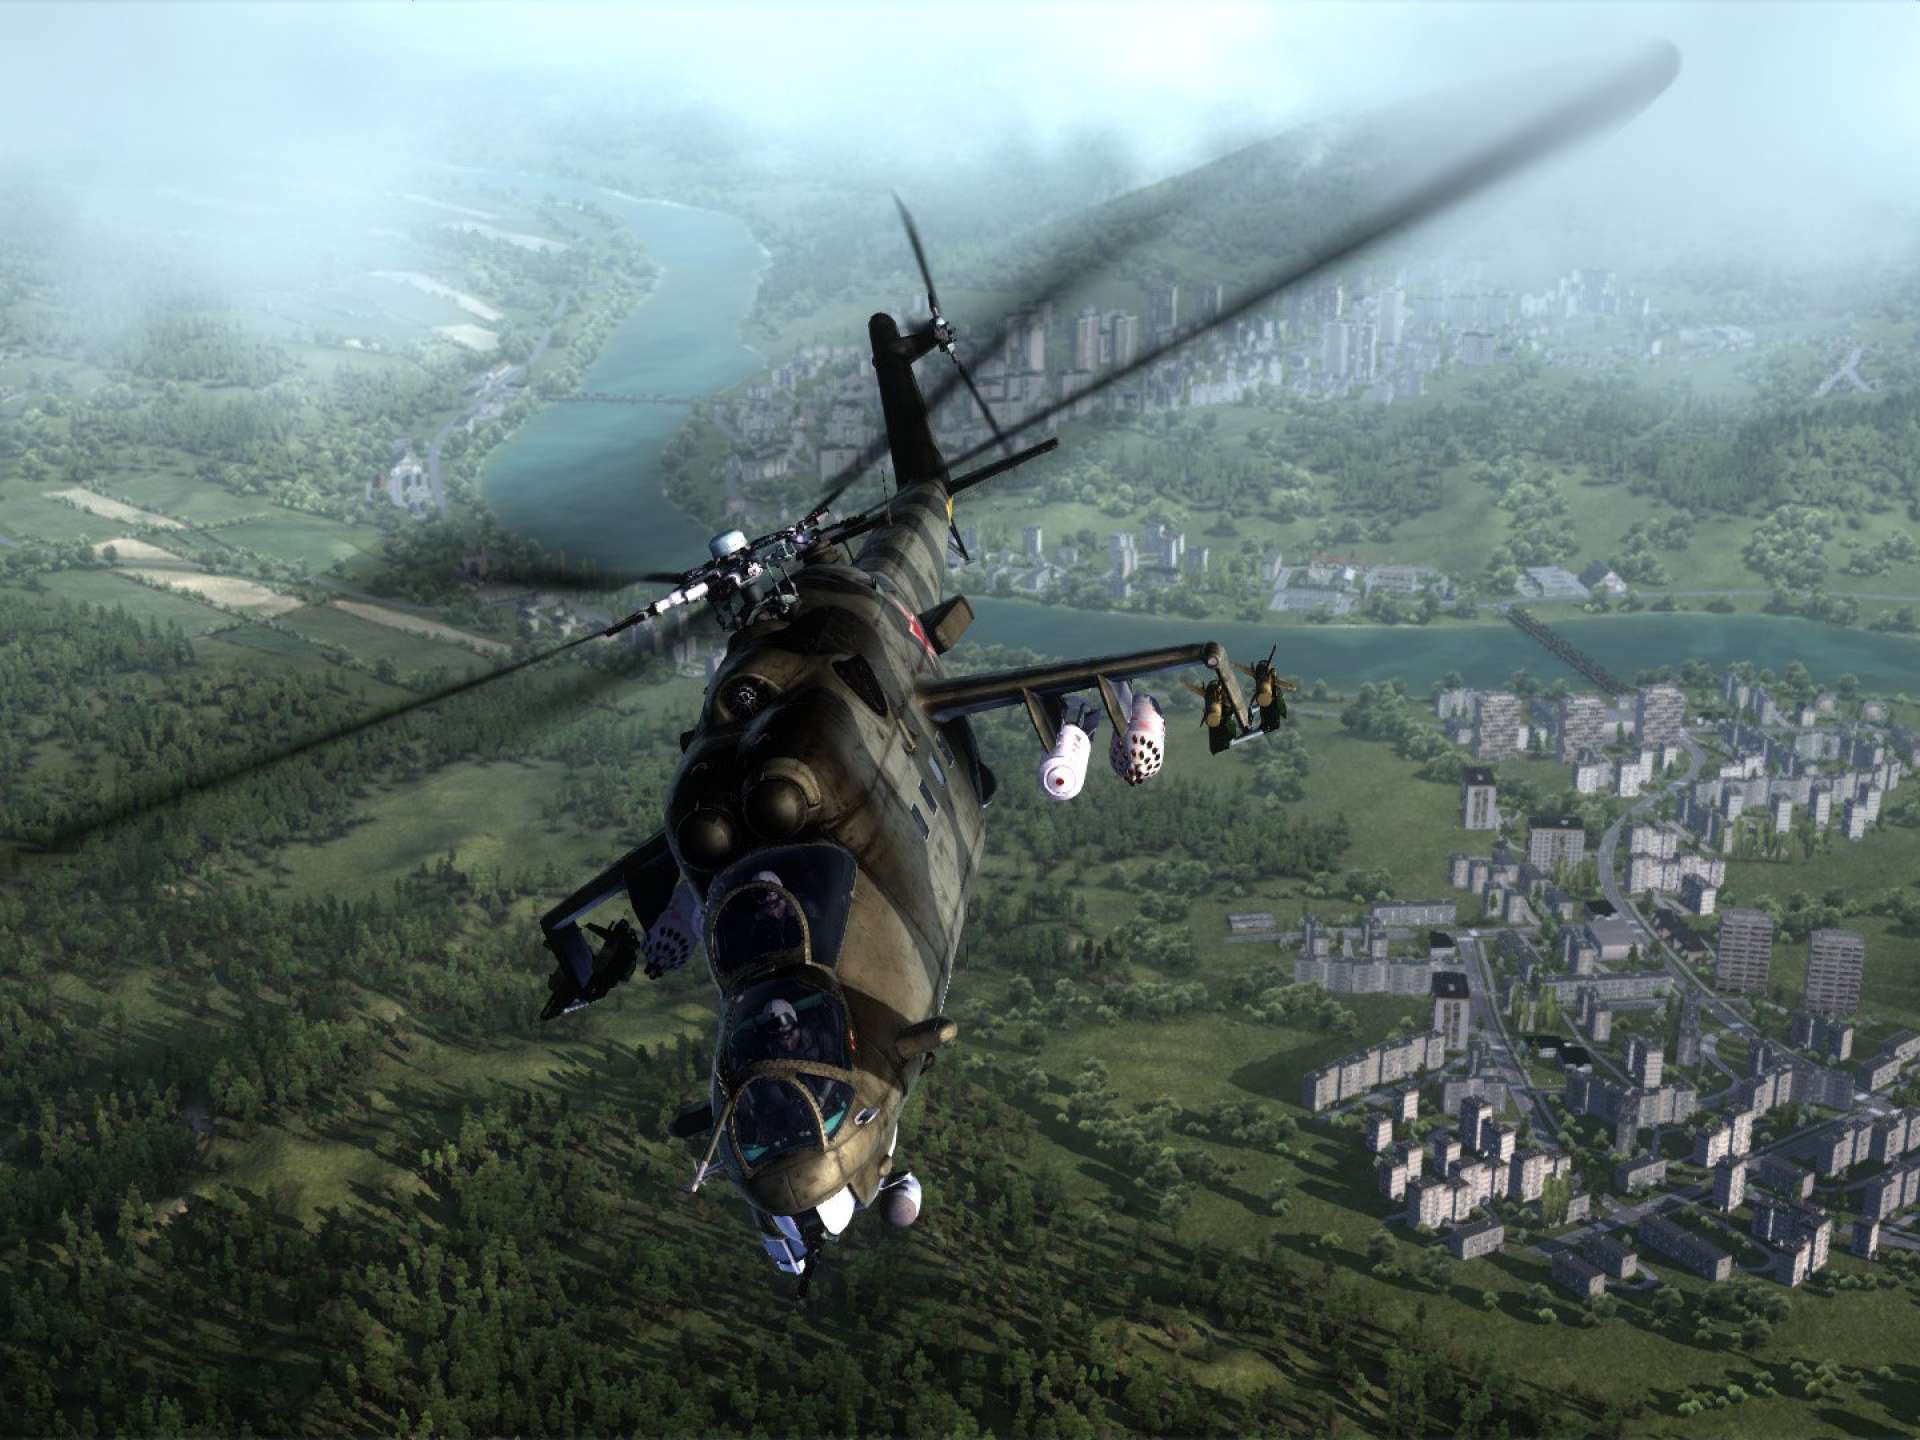 Сталкер вертолет игра. Air Missions: hind игра. Air Missions ps4. Вертолет ми 24 сталкер. Air Missions hind ps4.